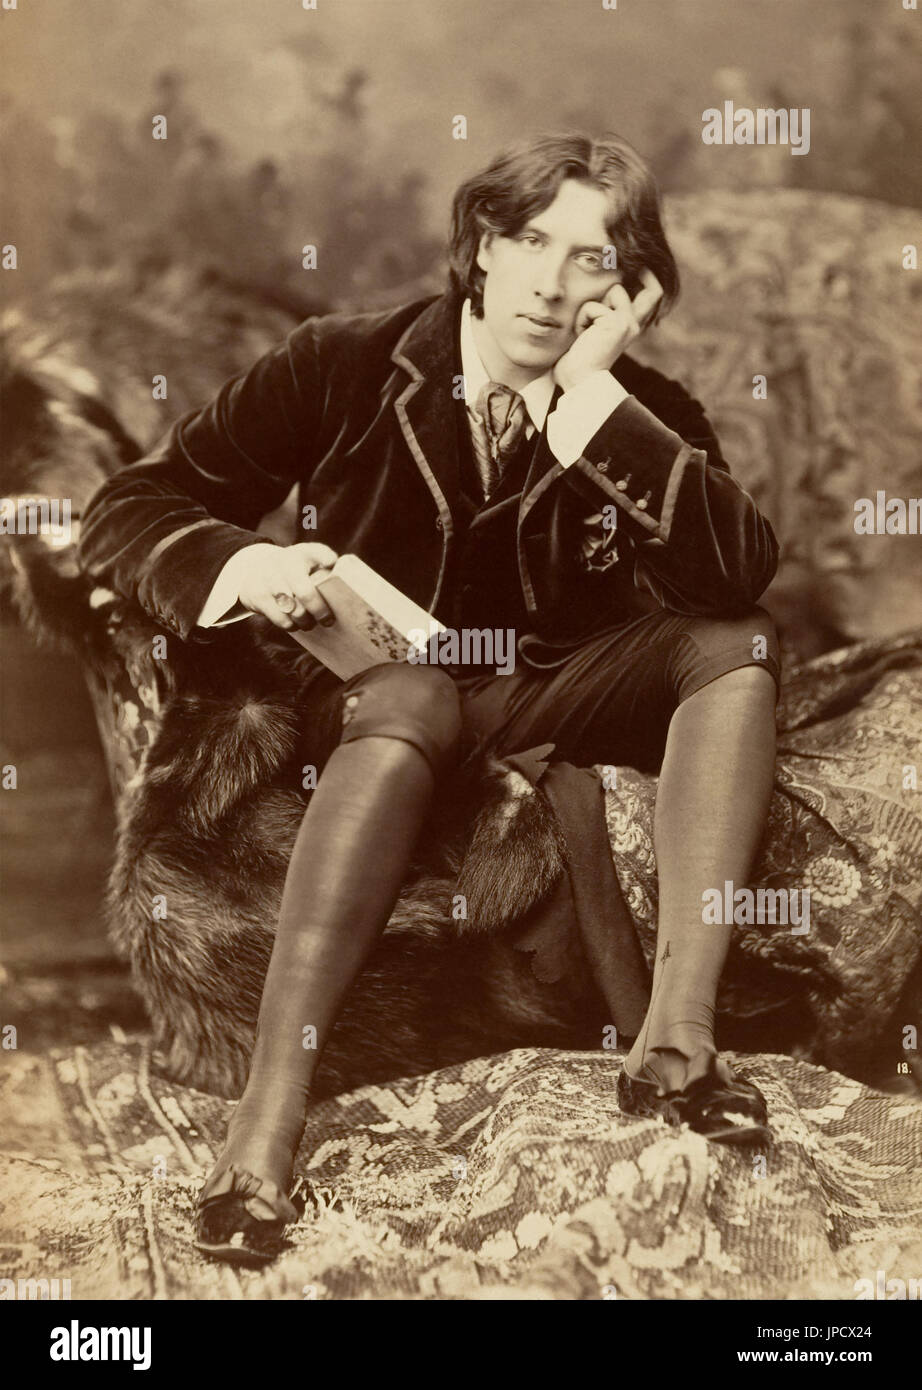 Oscar Wilde (1854-1900) war ein irischer Schriftsteller, Dichter und Dramatiker bekannt für seinen Witz, philosophische Ästhetik und Hedonismus. Wilde wurde verhaftet, versucht, im Jahre 1885 für grobe Unanständigkeit mit Männer verurteilt und diente zwei Jahre im Gefängnis. Wenige Jahre später starb er im Alter von 46 Jahren mittellos in Paris. Stockfoto